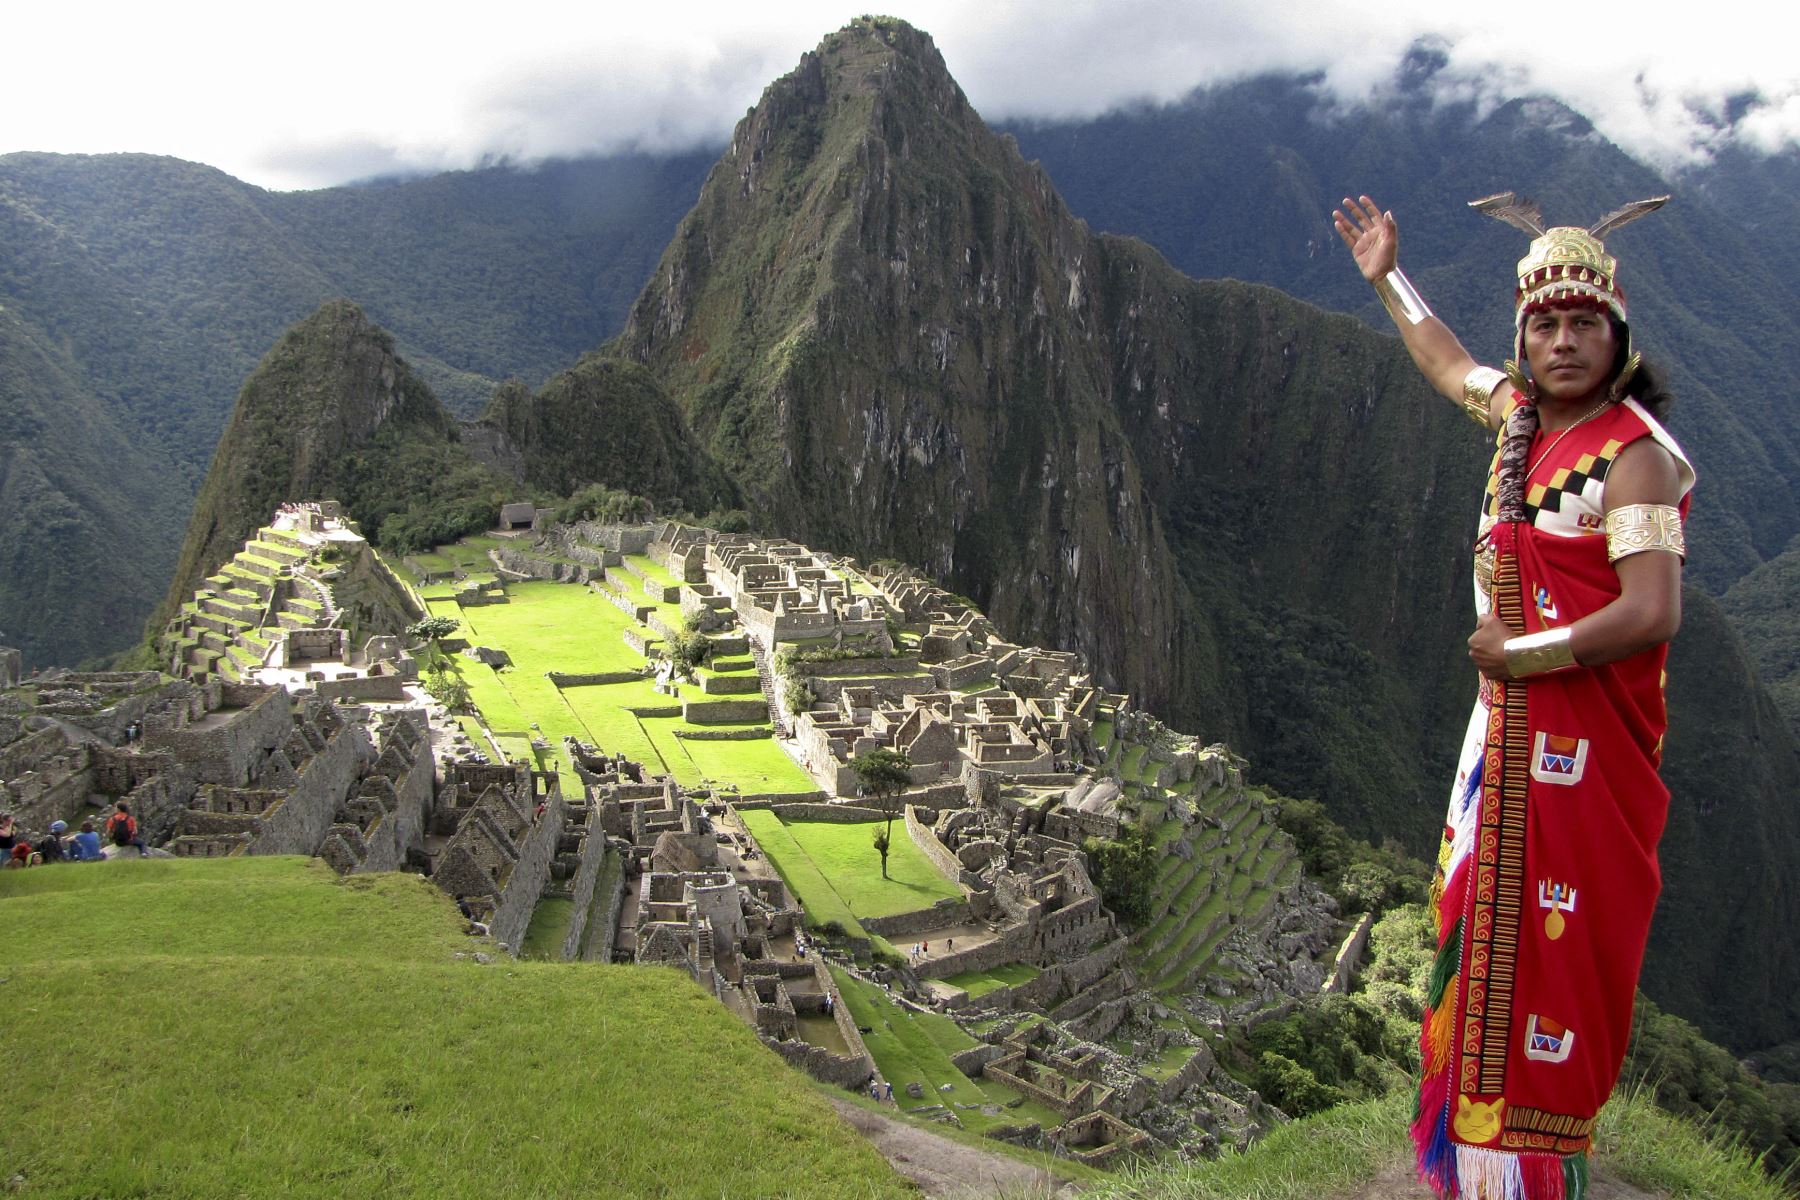 Con una ceremonia incaica y otras actividades, autoridades locales celebrarán el 15 aniversario de la declaratoria de Machu Picchu como una de las siete maravillas del mundo. Foto: AFP.